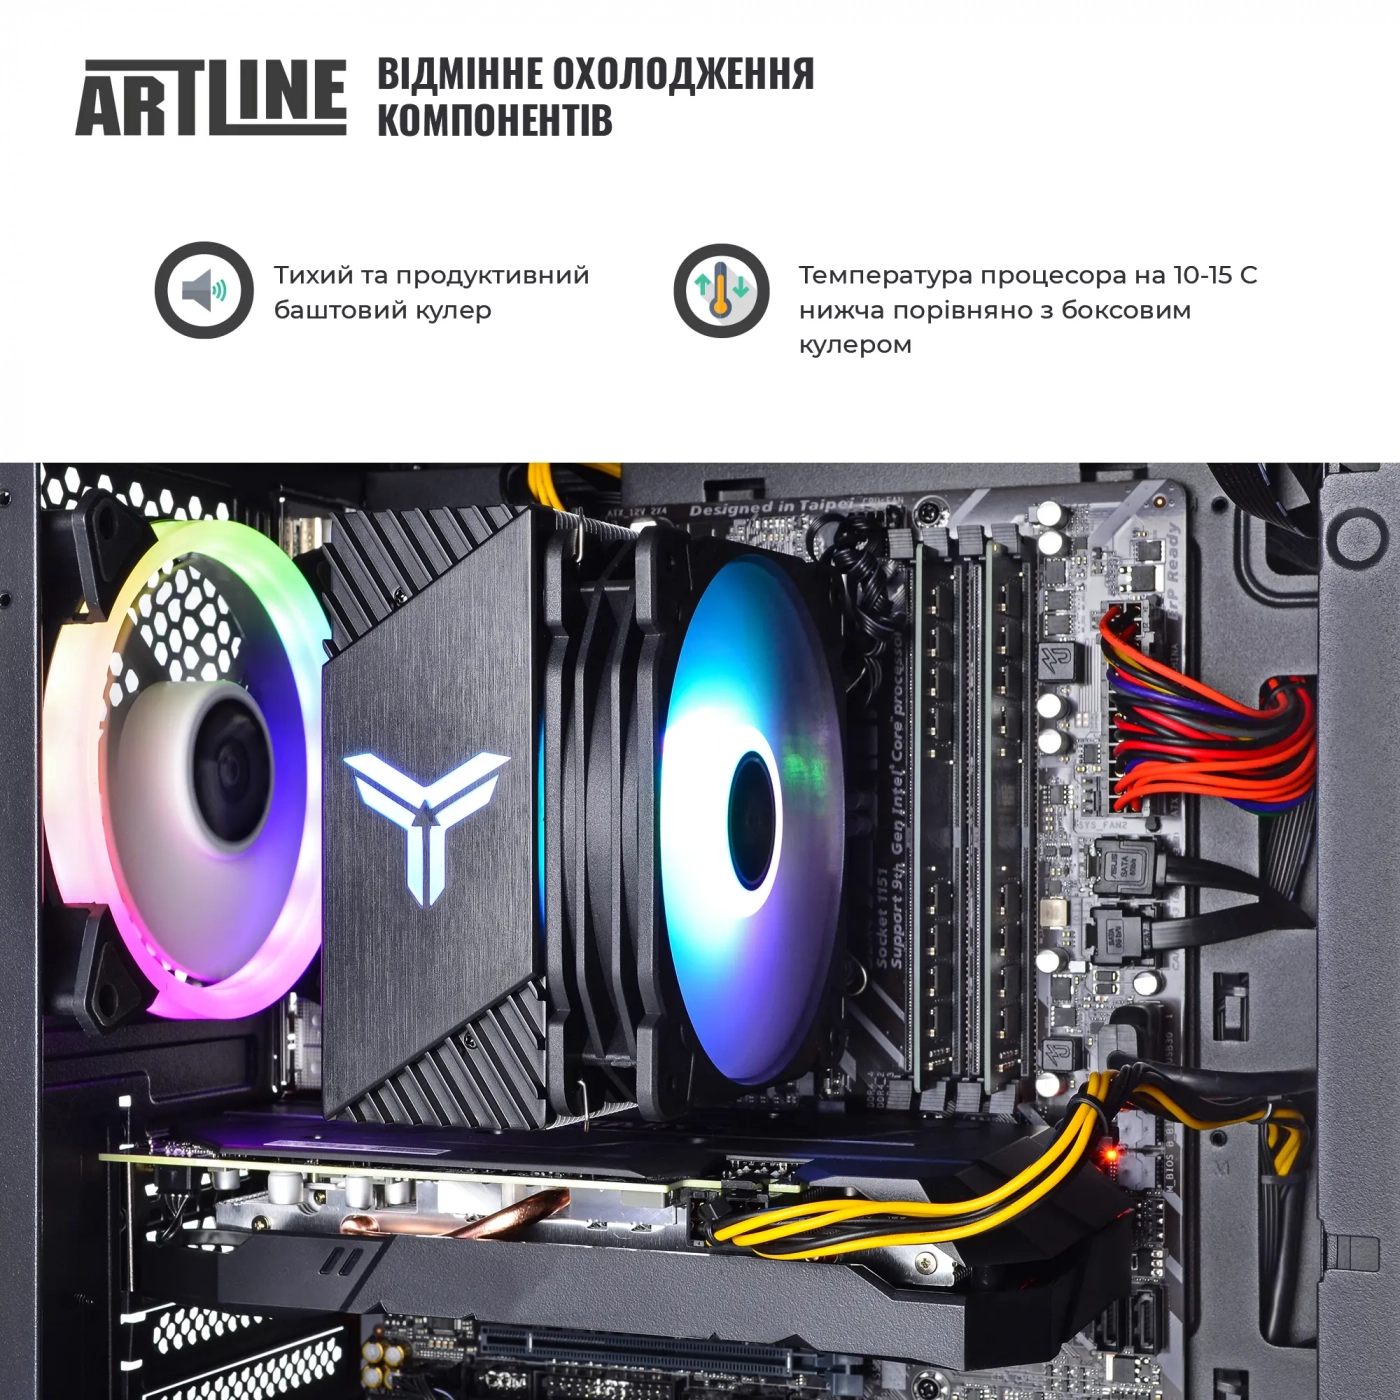 Купить Компьютер ARTLINE Gaming X61v14 - фото 3